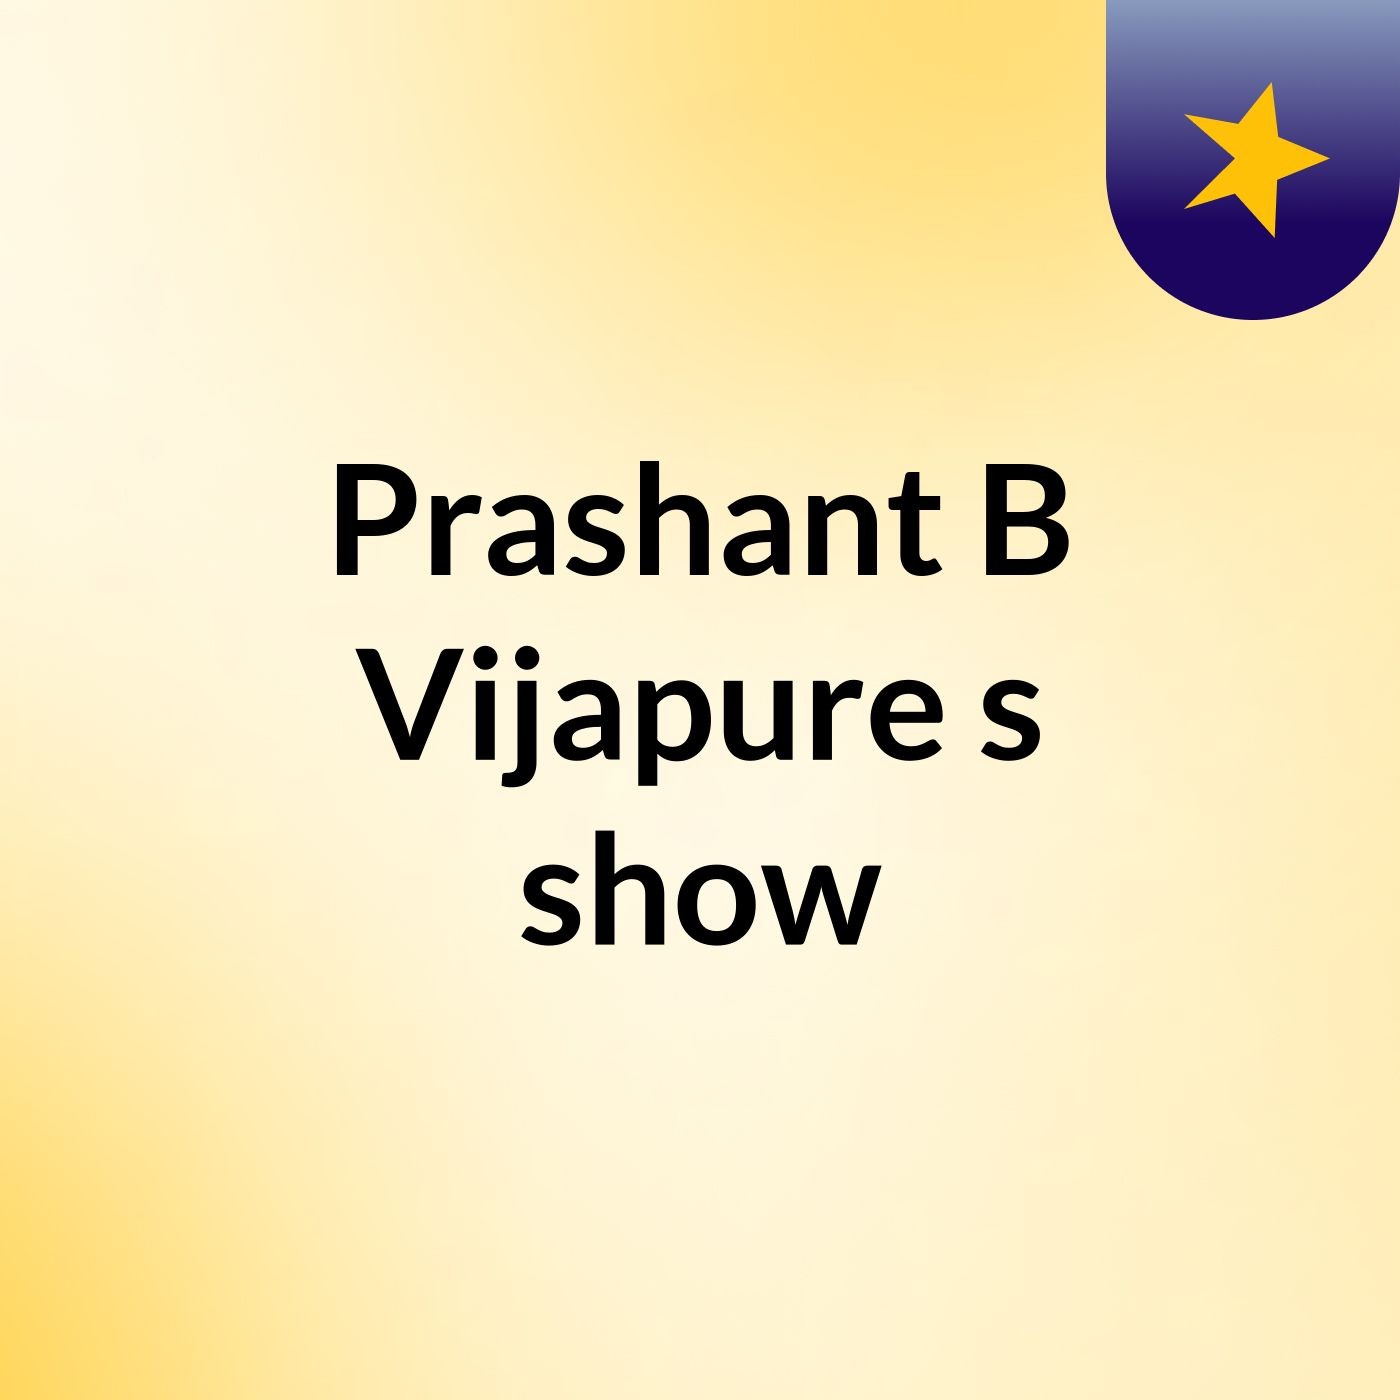 Episode 2 - Prashant B Vijapure's show